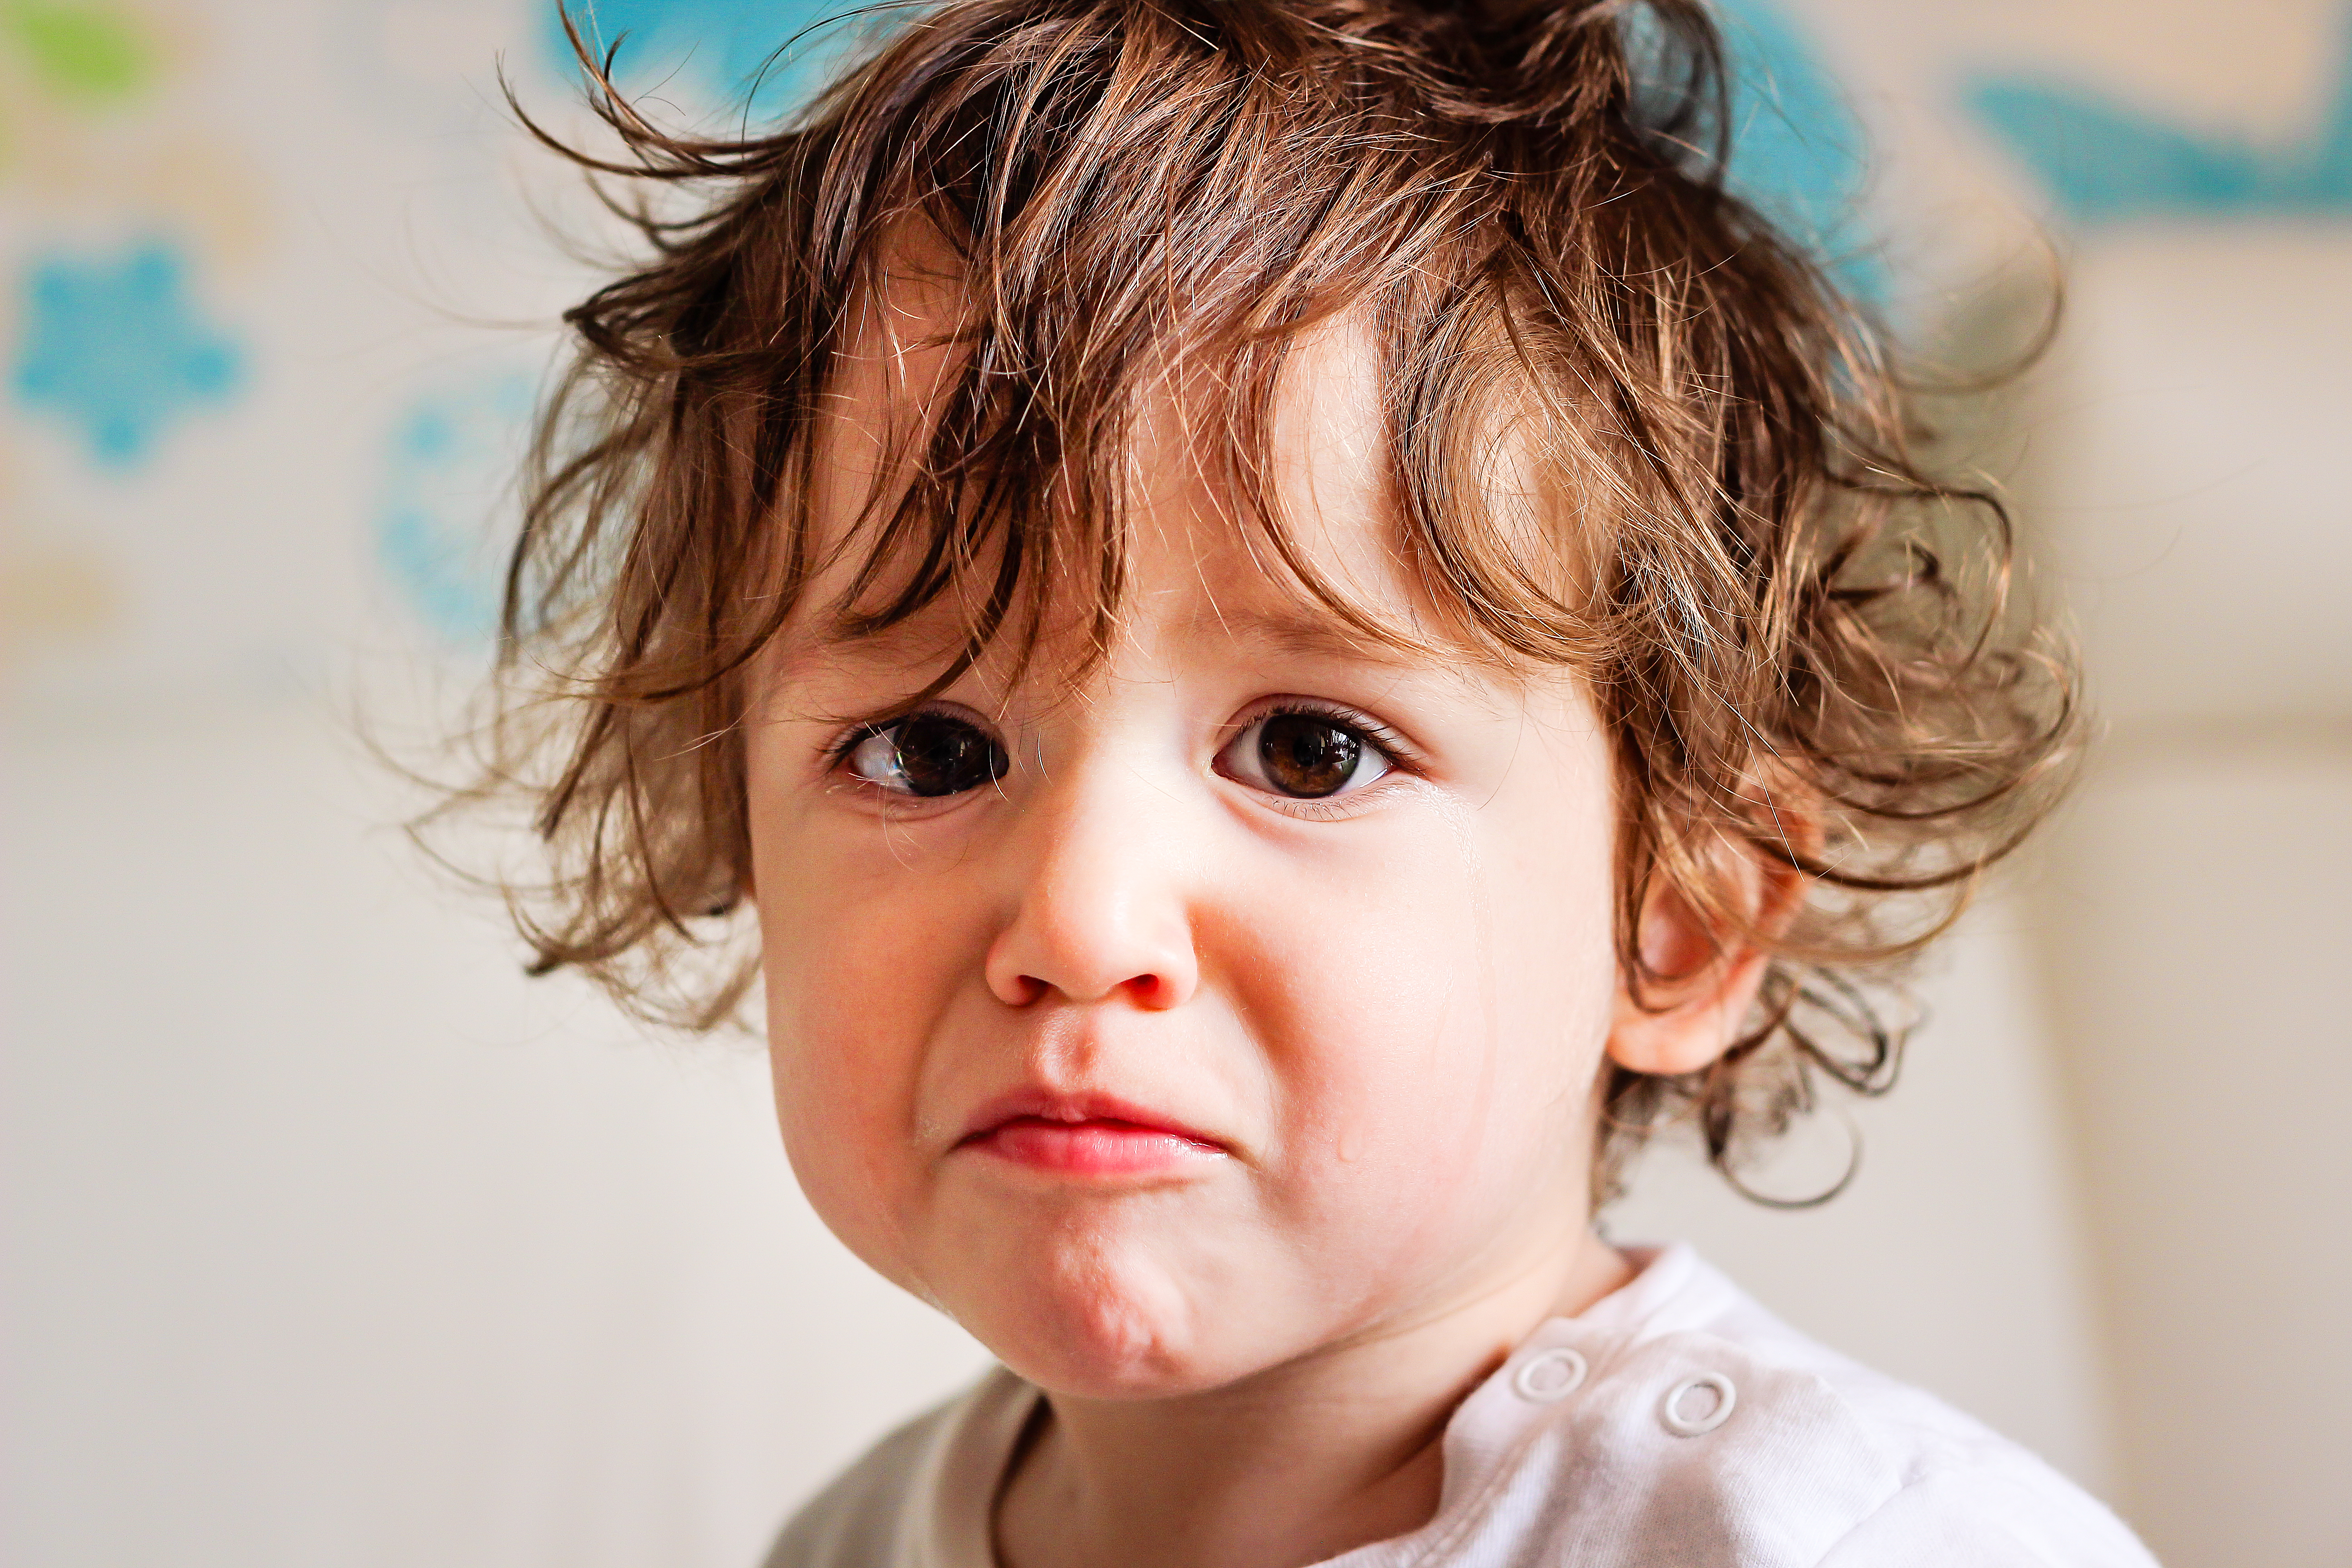 Ein besorgt dreinschauendes Kleinkind | Quelle: Shutterstock